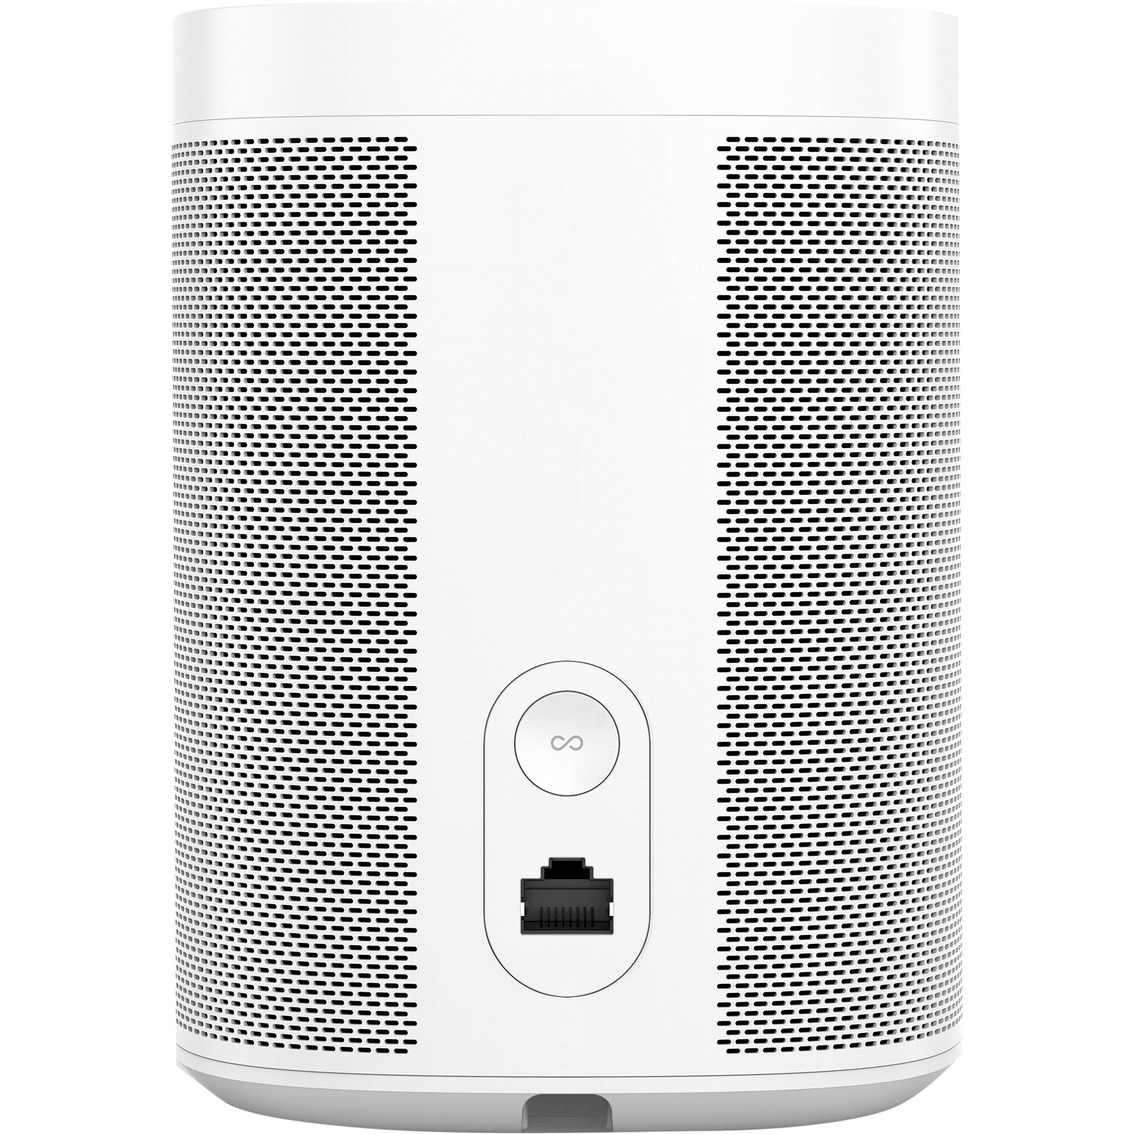 Sonos One (Gen 2) with Amazon Alexa - Image 2 of 3